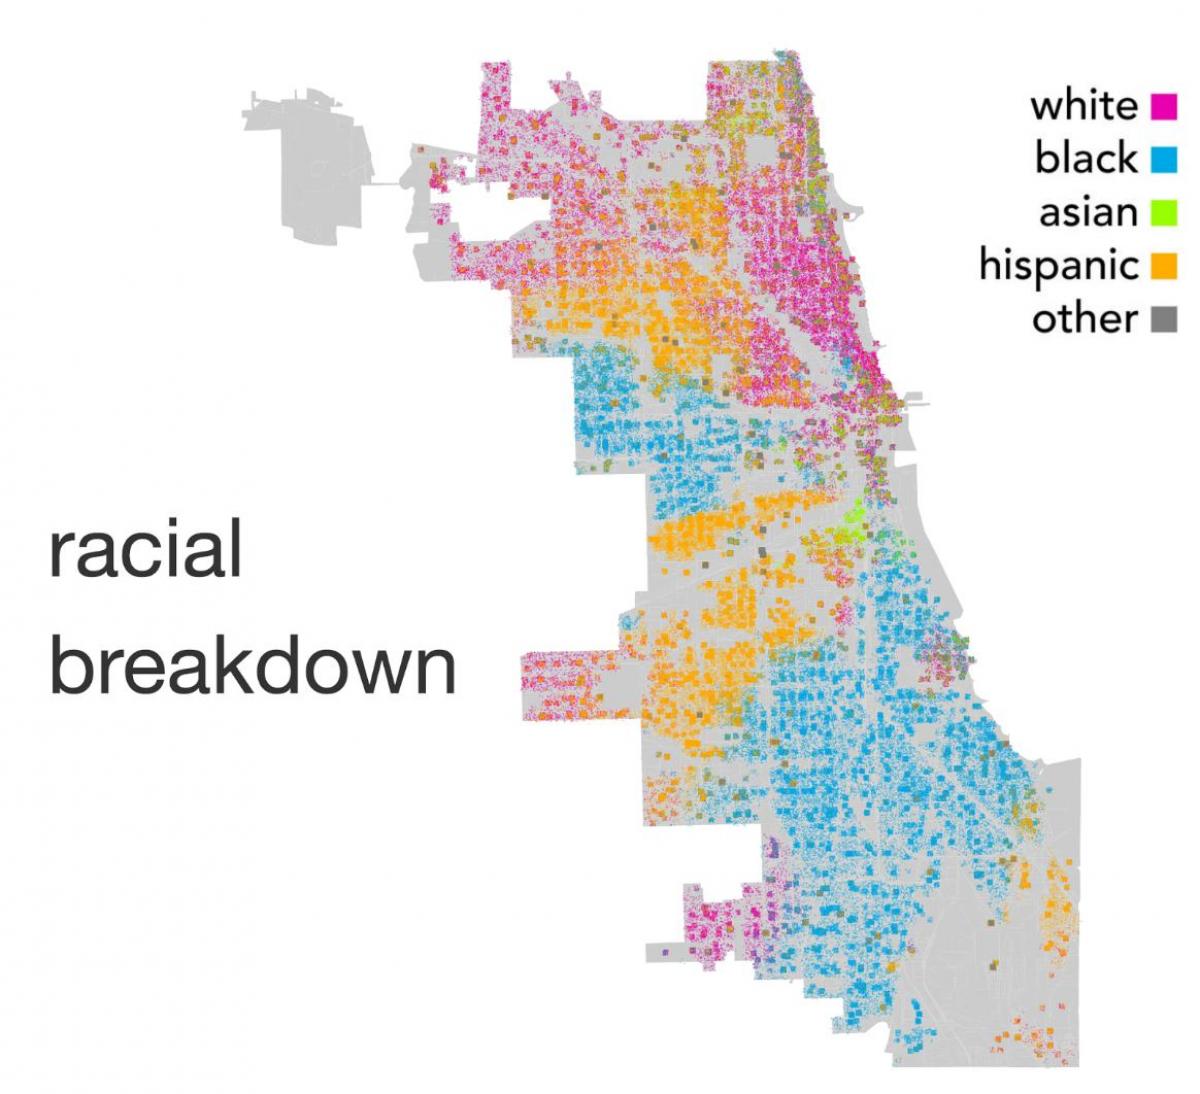 Chicago haritası etnik